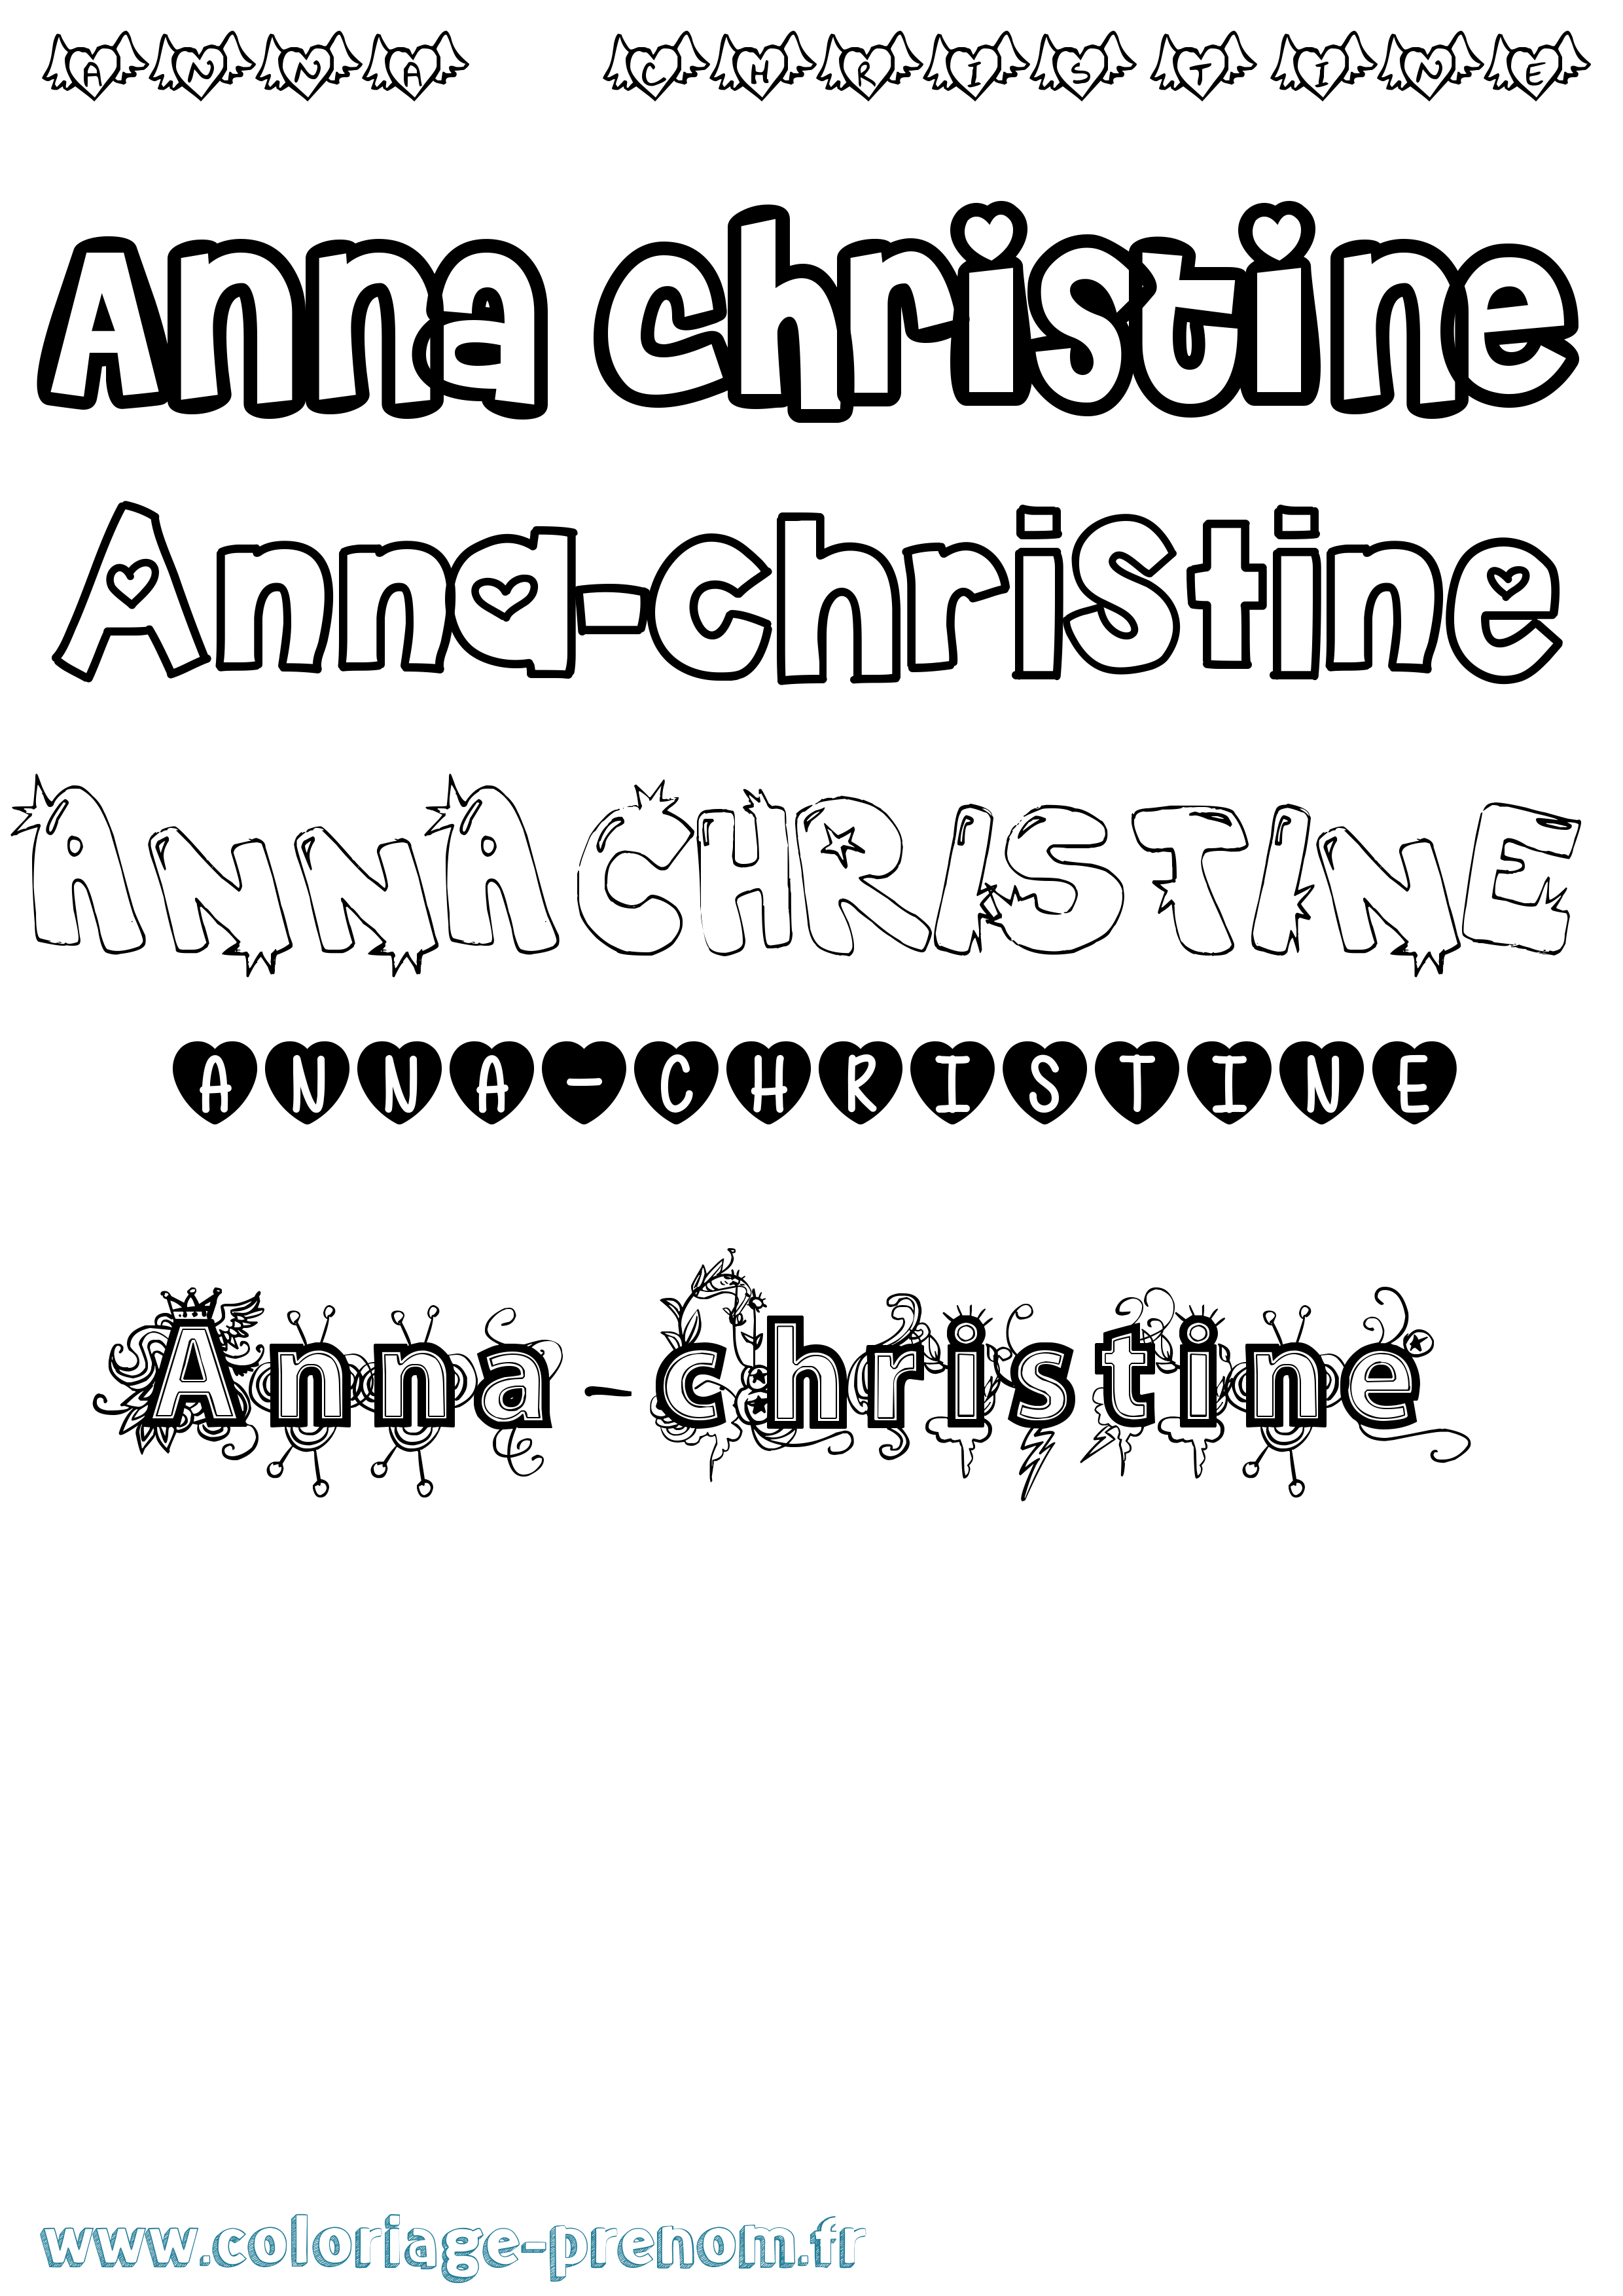 Coloriage prénom Anna-Christine Girly